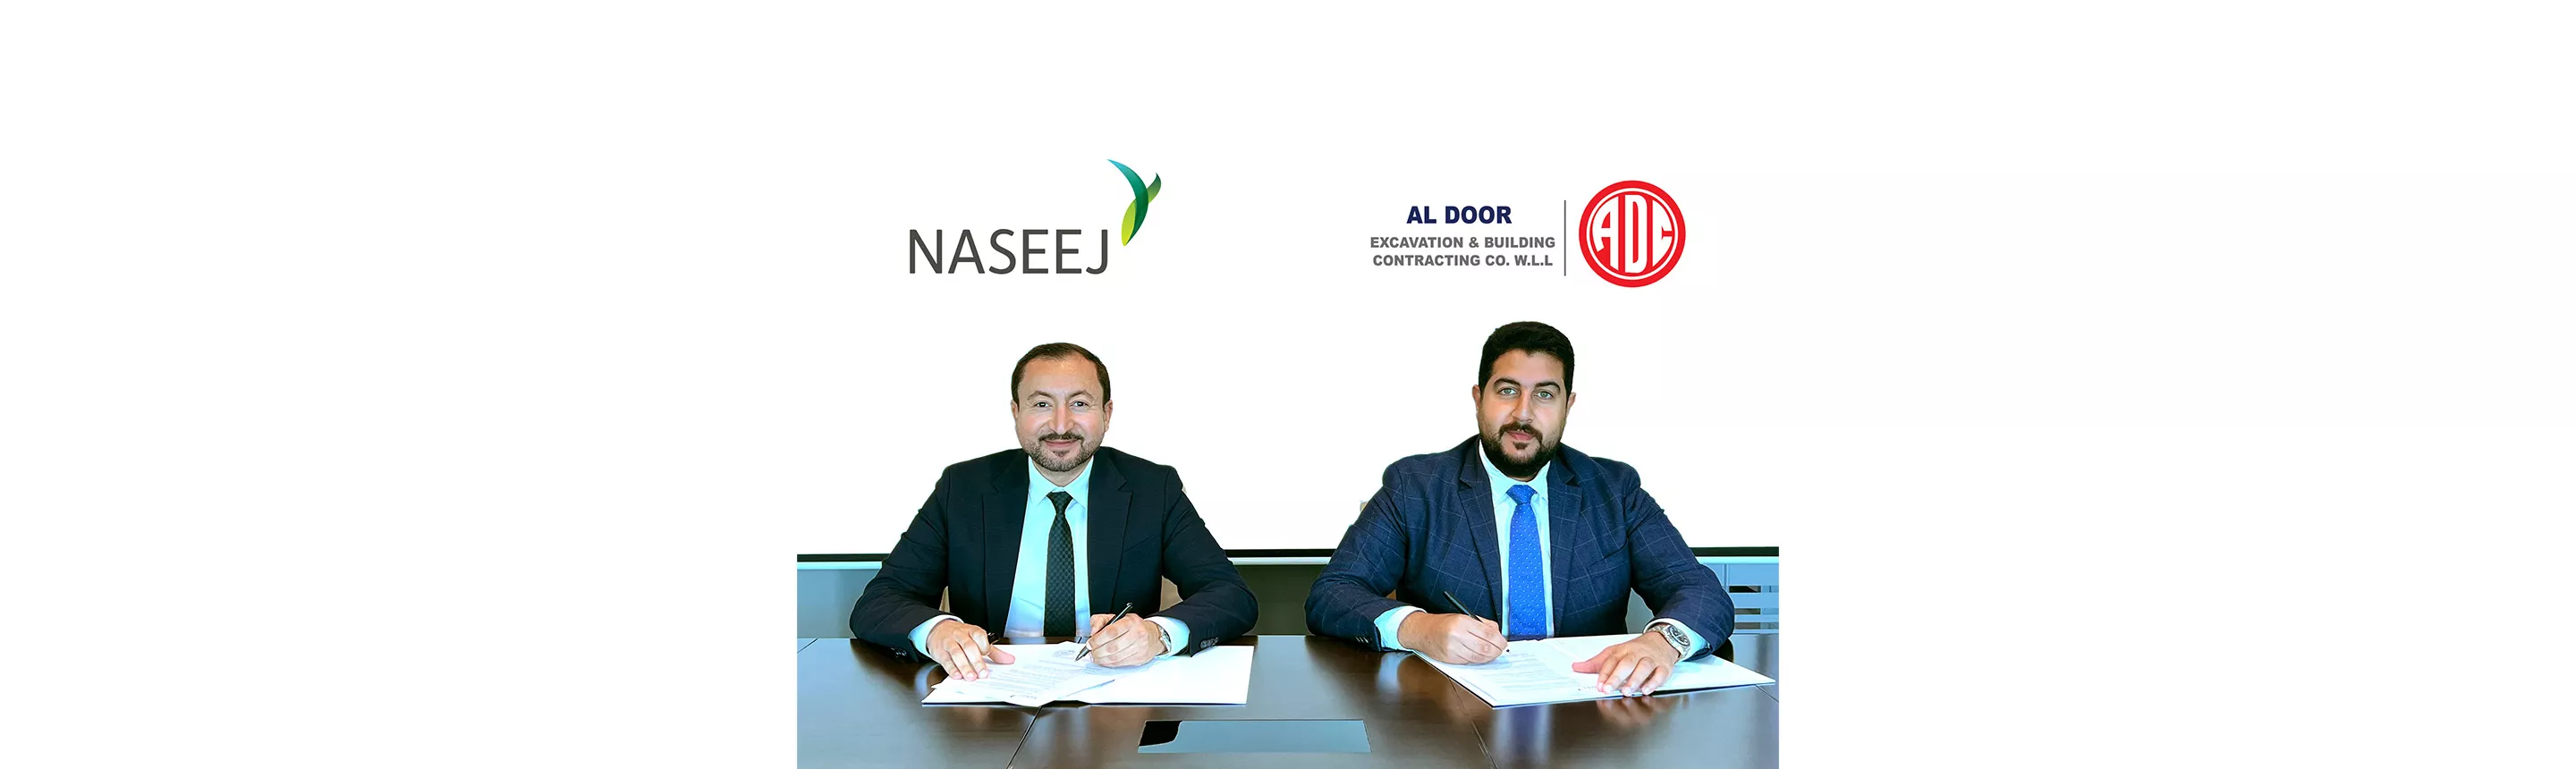 Naseej signing with Al Door